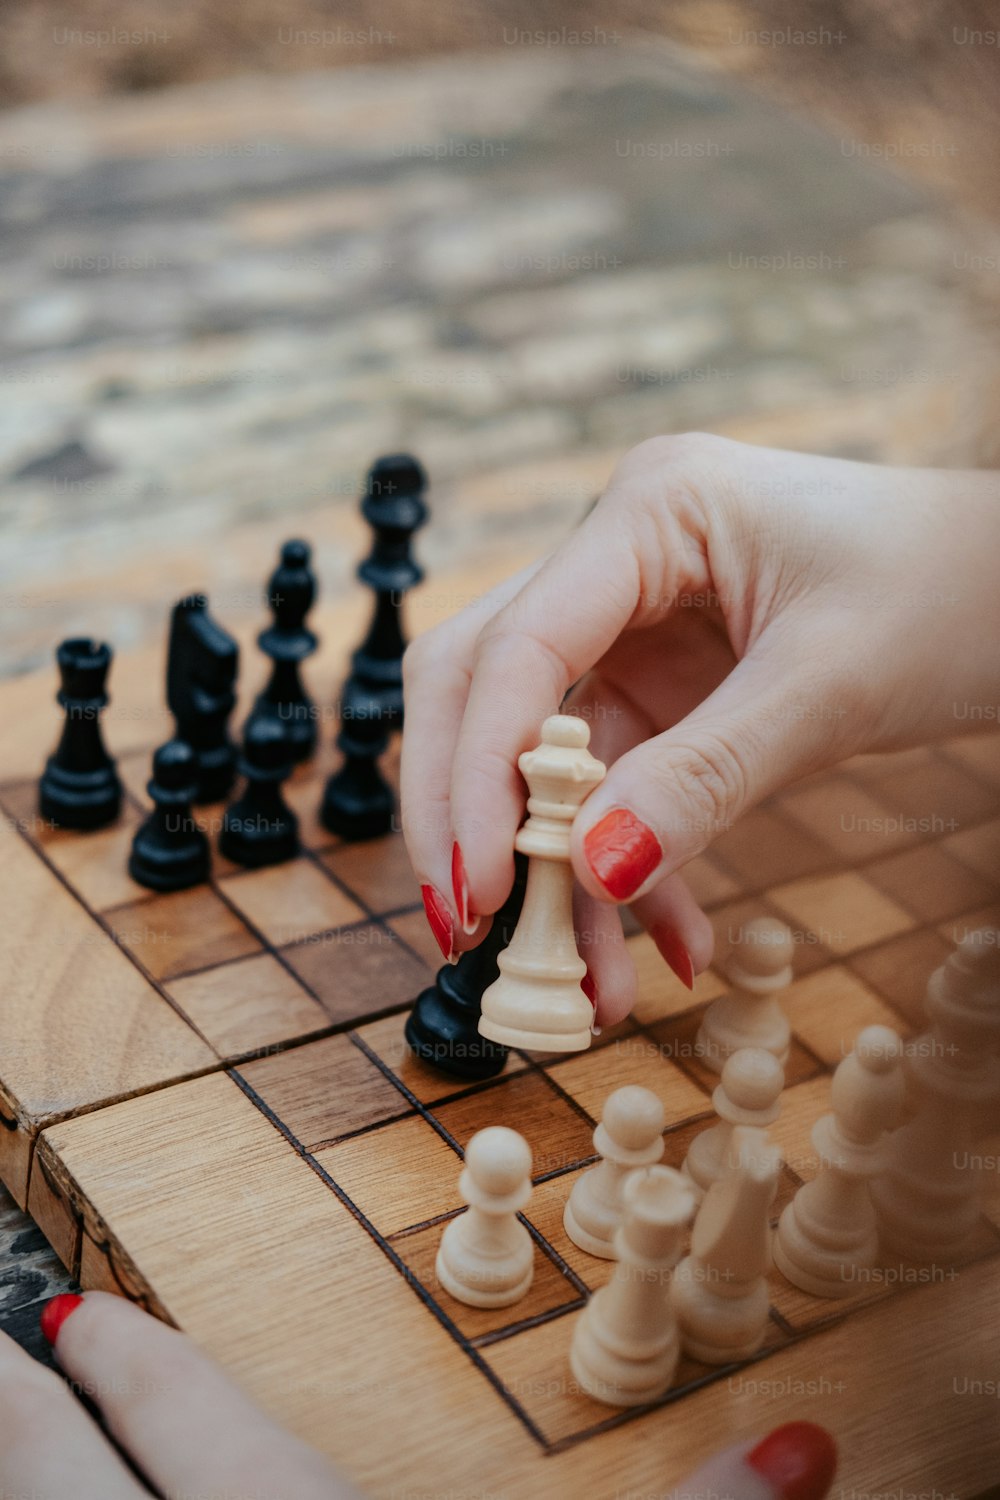 Eine Frau spielt eine Partie Schach